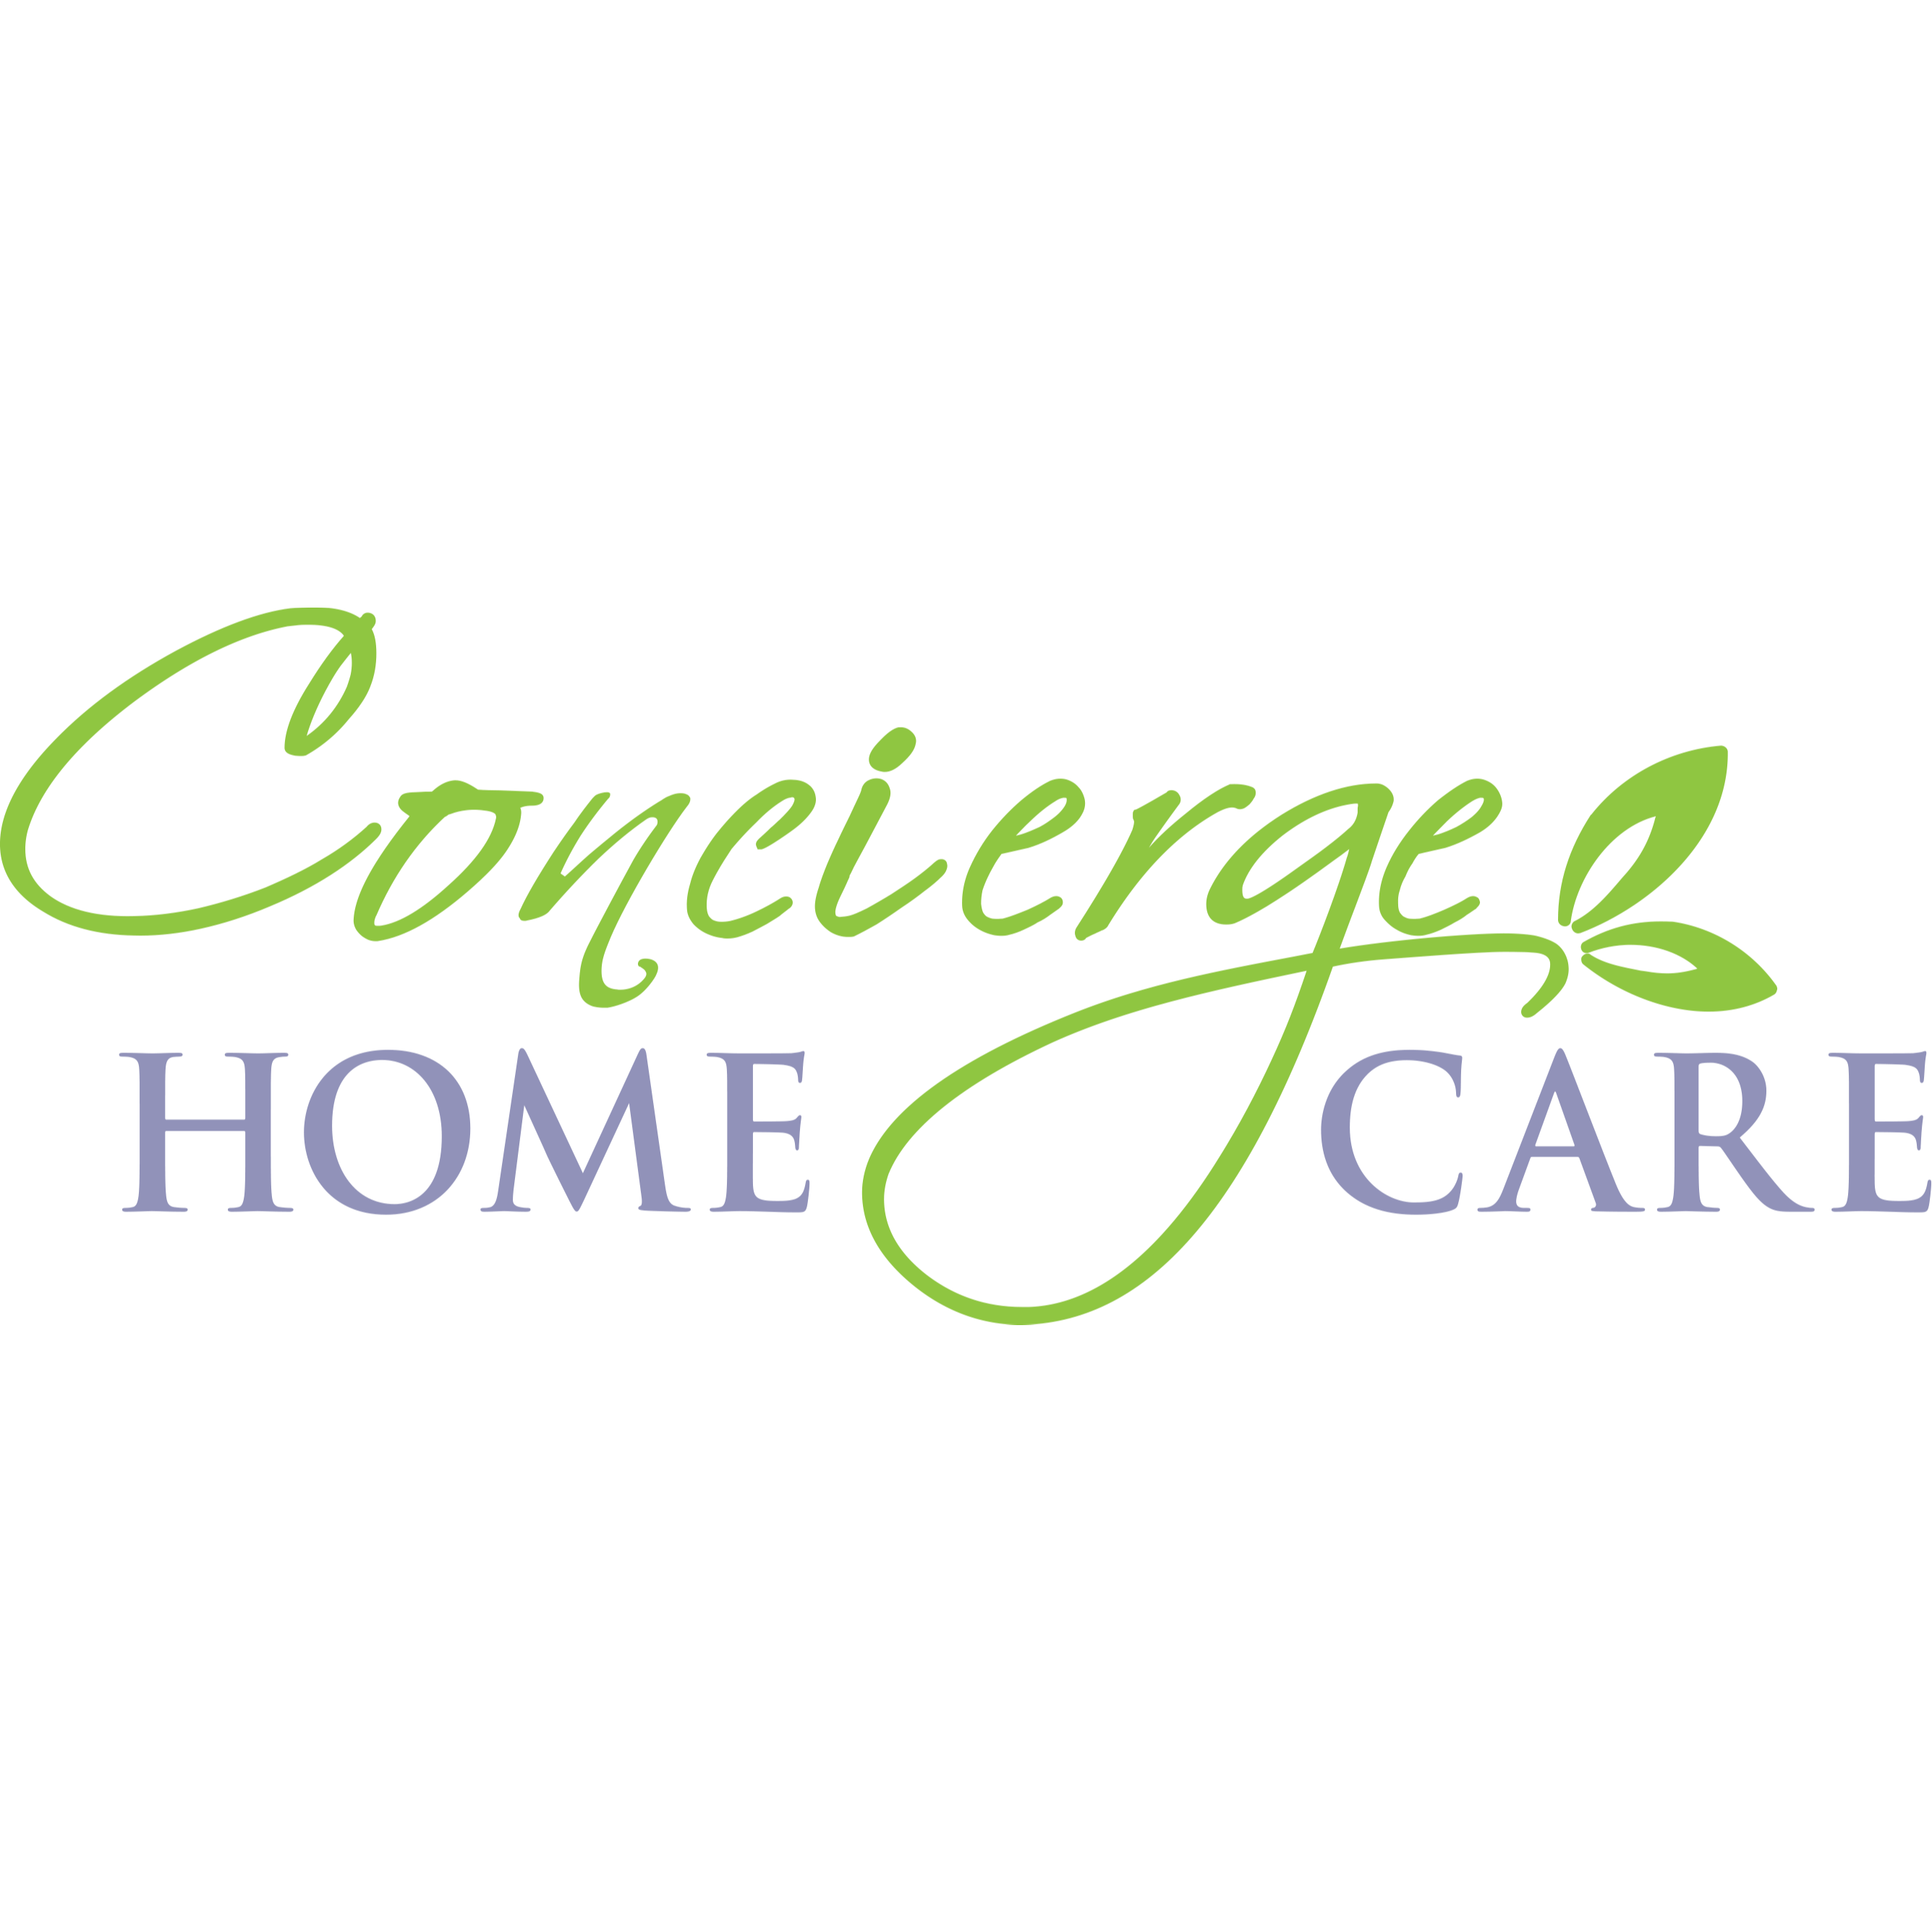 Concierge Home Care - Sebring, FL 33870 - (863)471-9421 | ShowMeLocal.com